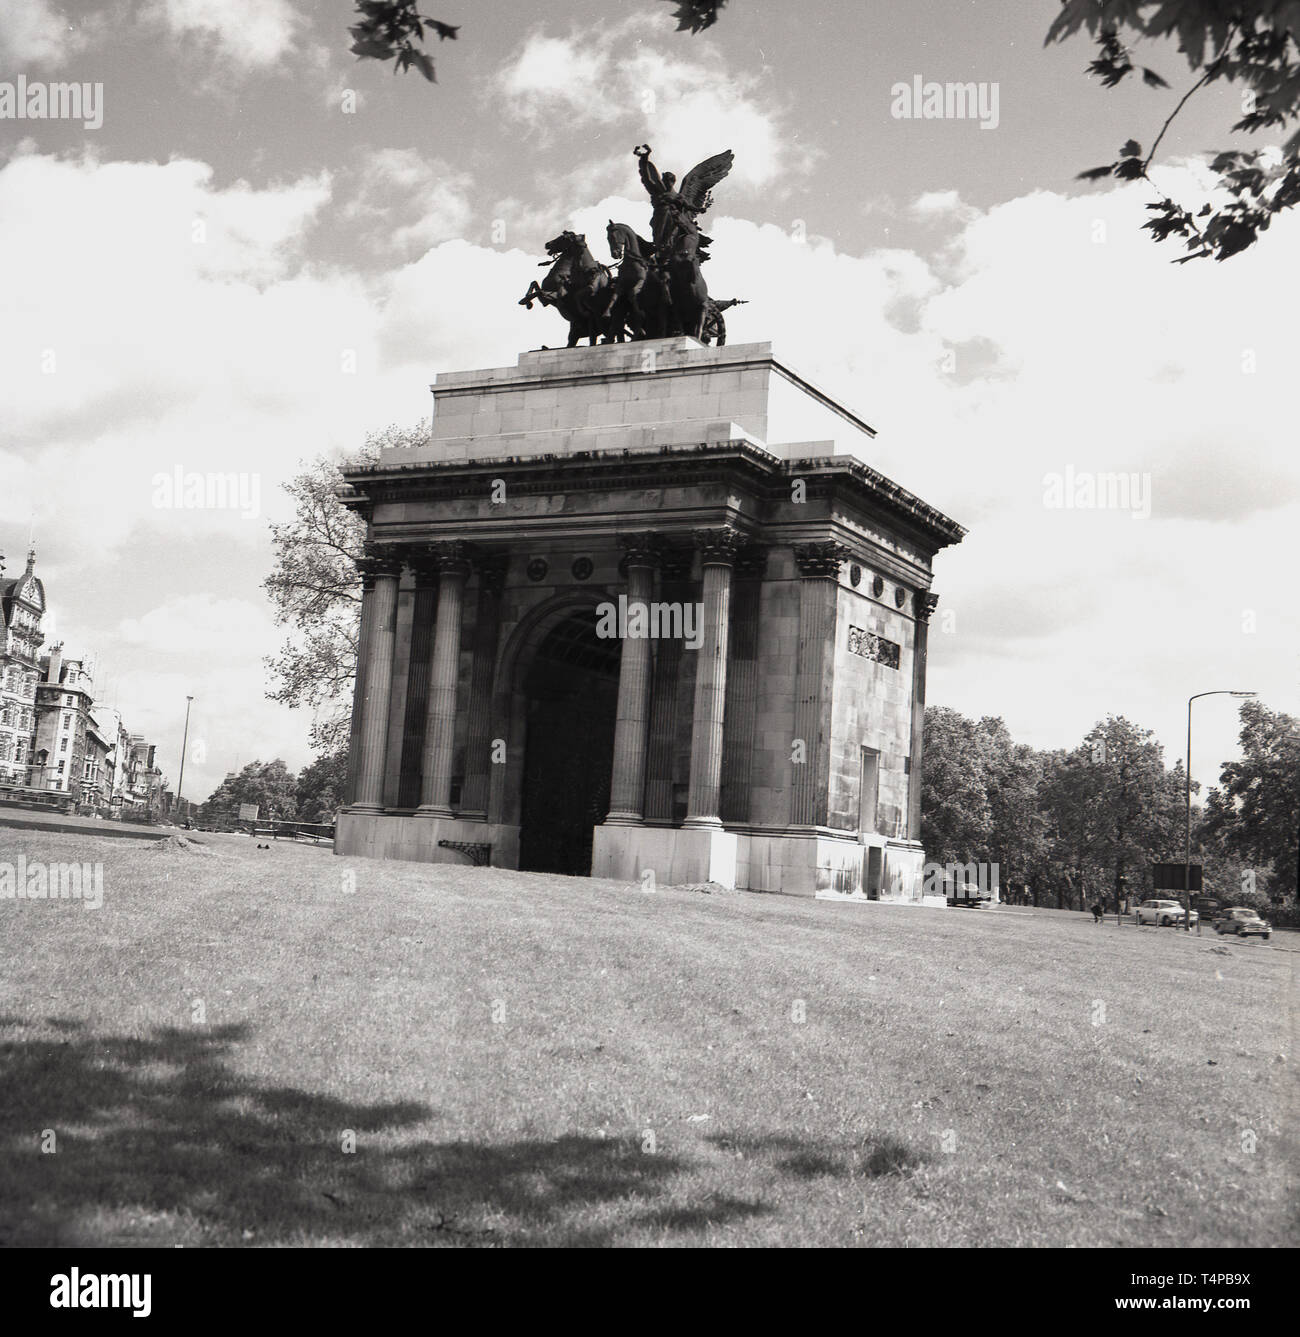 Anni sessanta, storico Vista Wellington Arch, Hyde Park Corner, Londra, da questa epoca. Una quadriga di bronzo ( antico a quattro carrozza a cavalli) è sormontato dal 1912. Fino al 1992, che ha ospitato il più piccolo poice stazione di Londra. Foto Stock